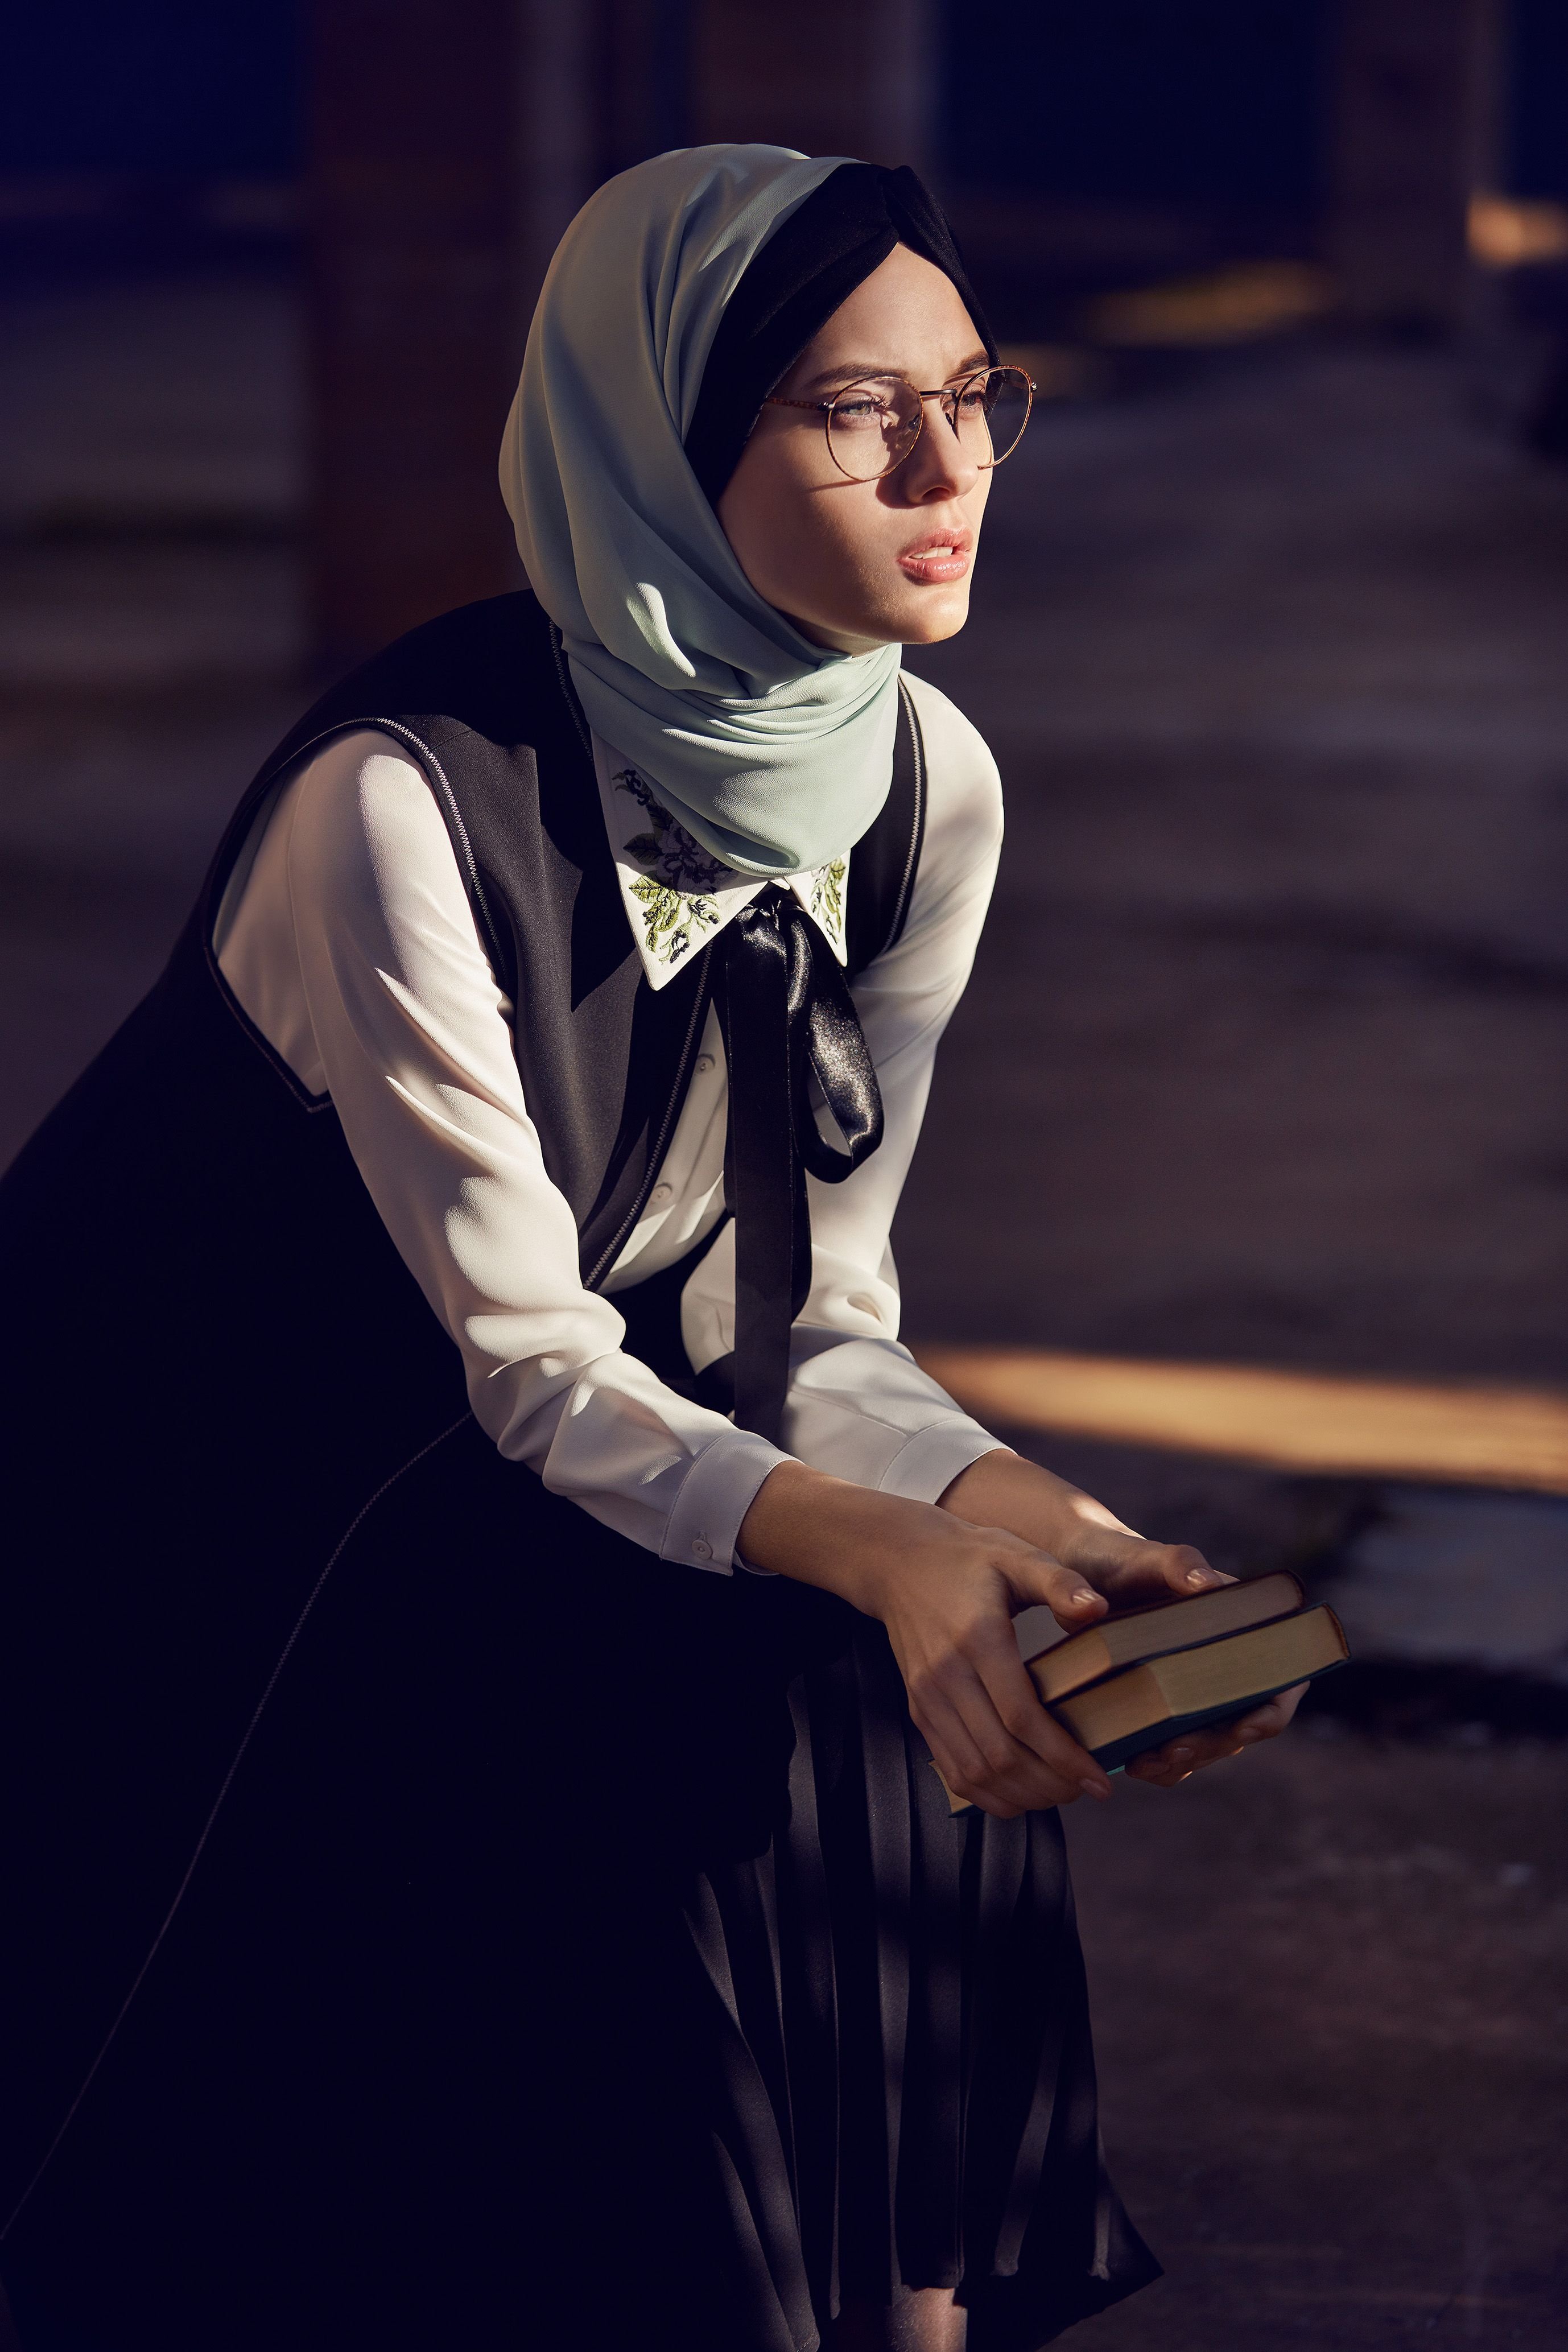 Девочка мусульманка в платке